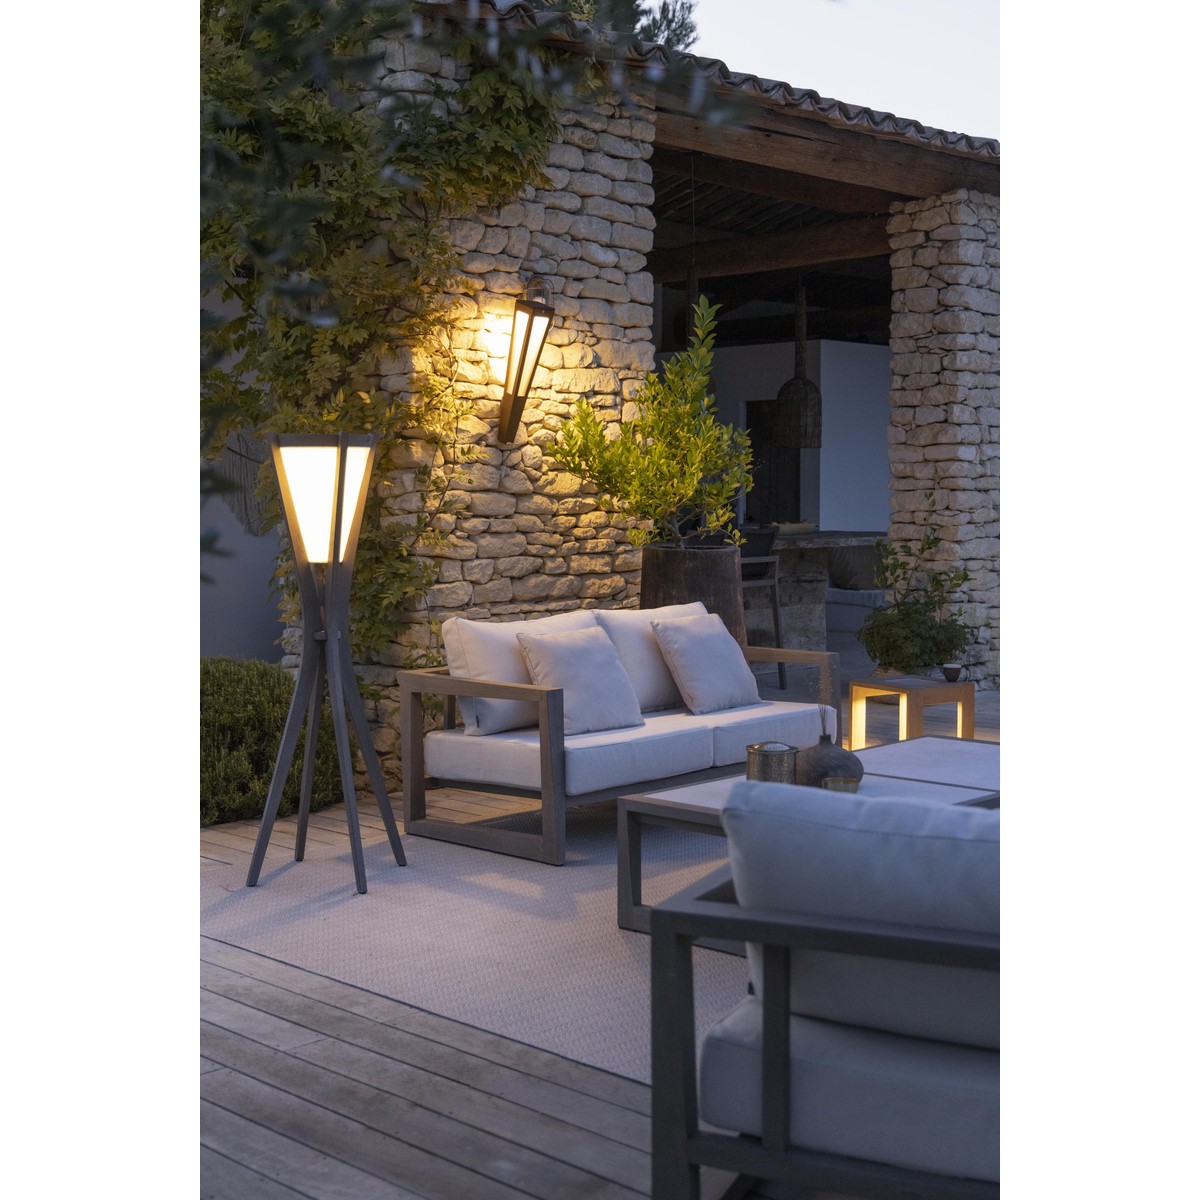 Les Jardins SELVA SELVA Lampadaire solaire et recharg.usb 500 Lumens Teck finition DT/Toile Ateja Blanche  60x60x150